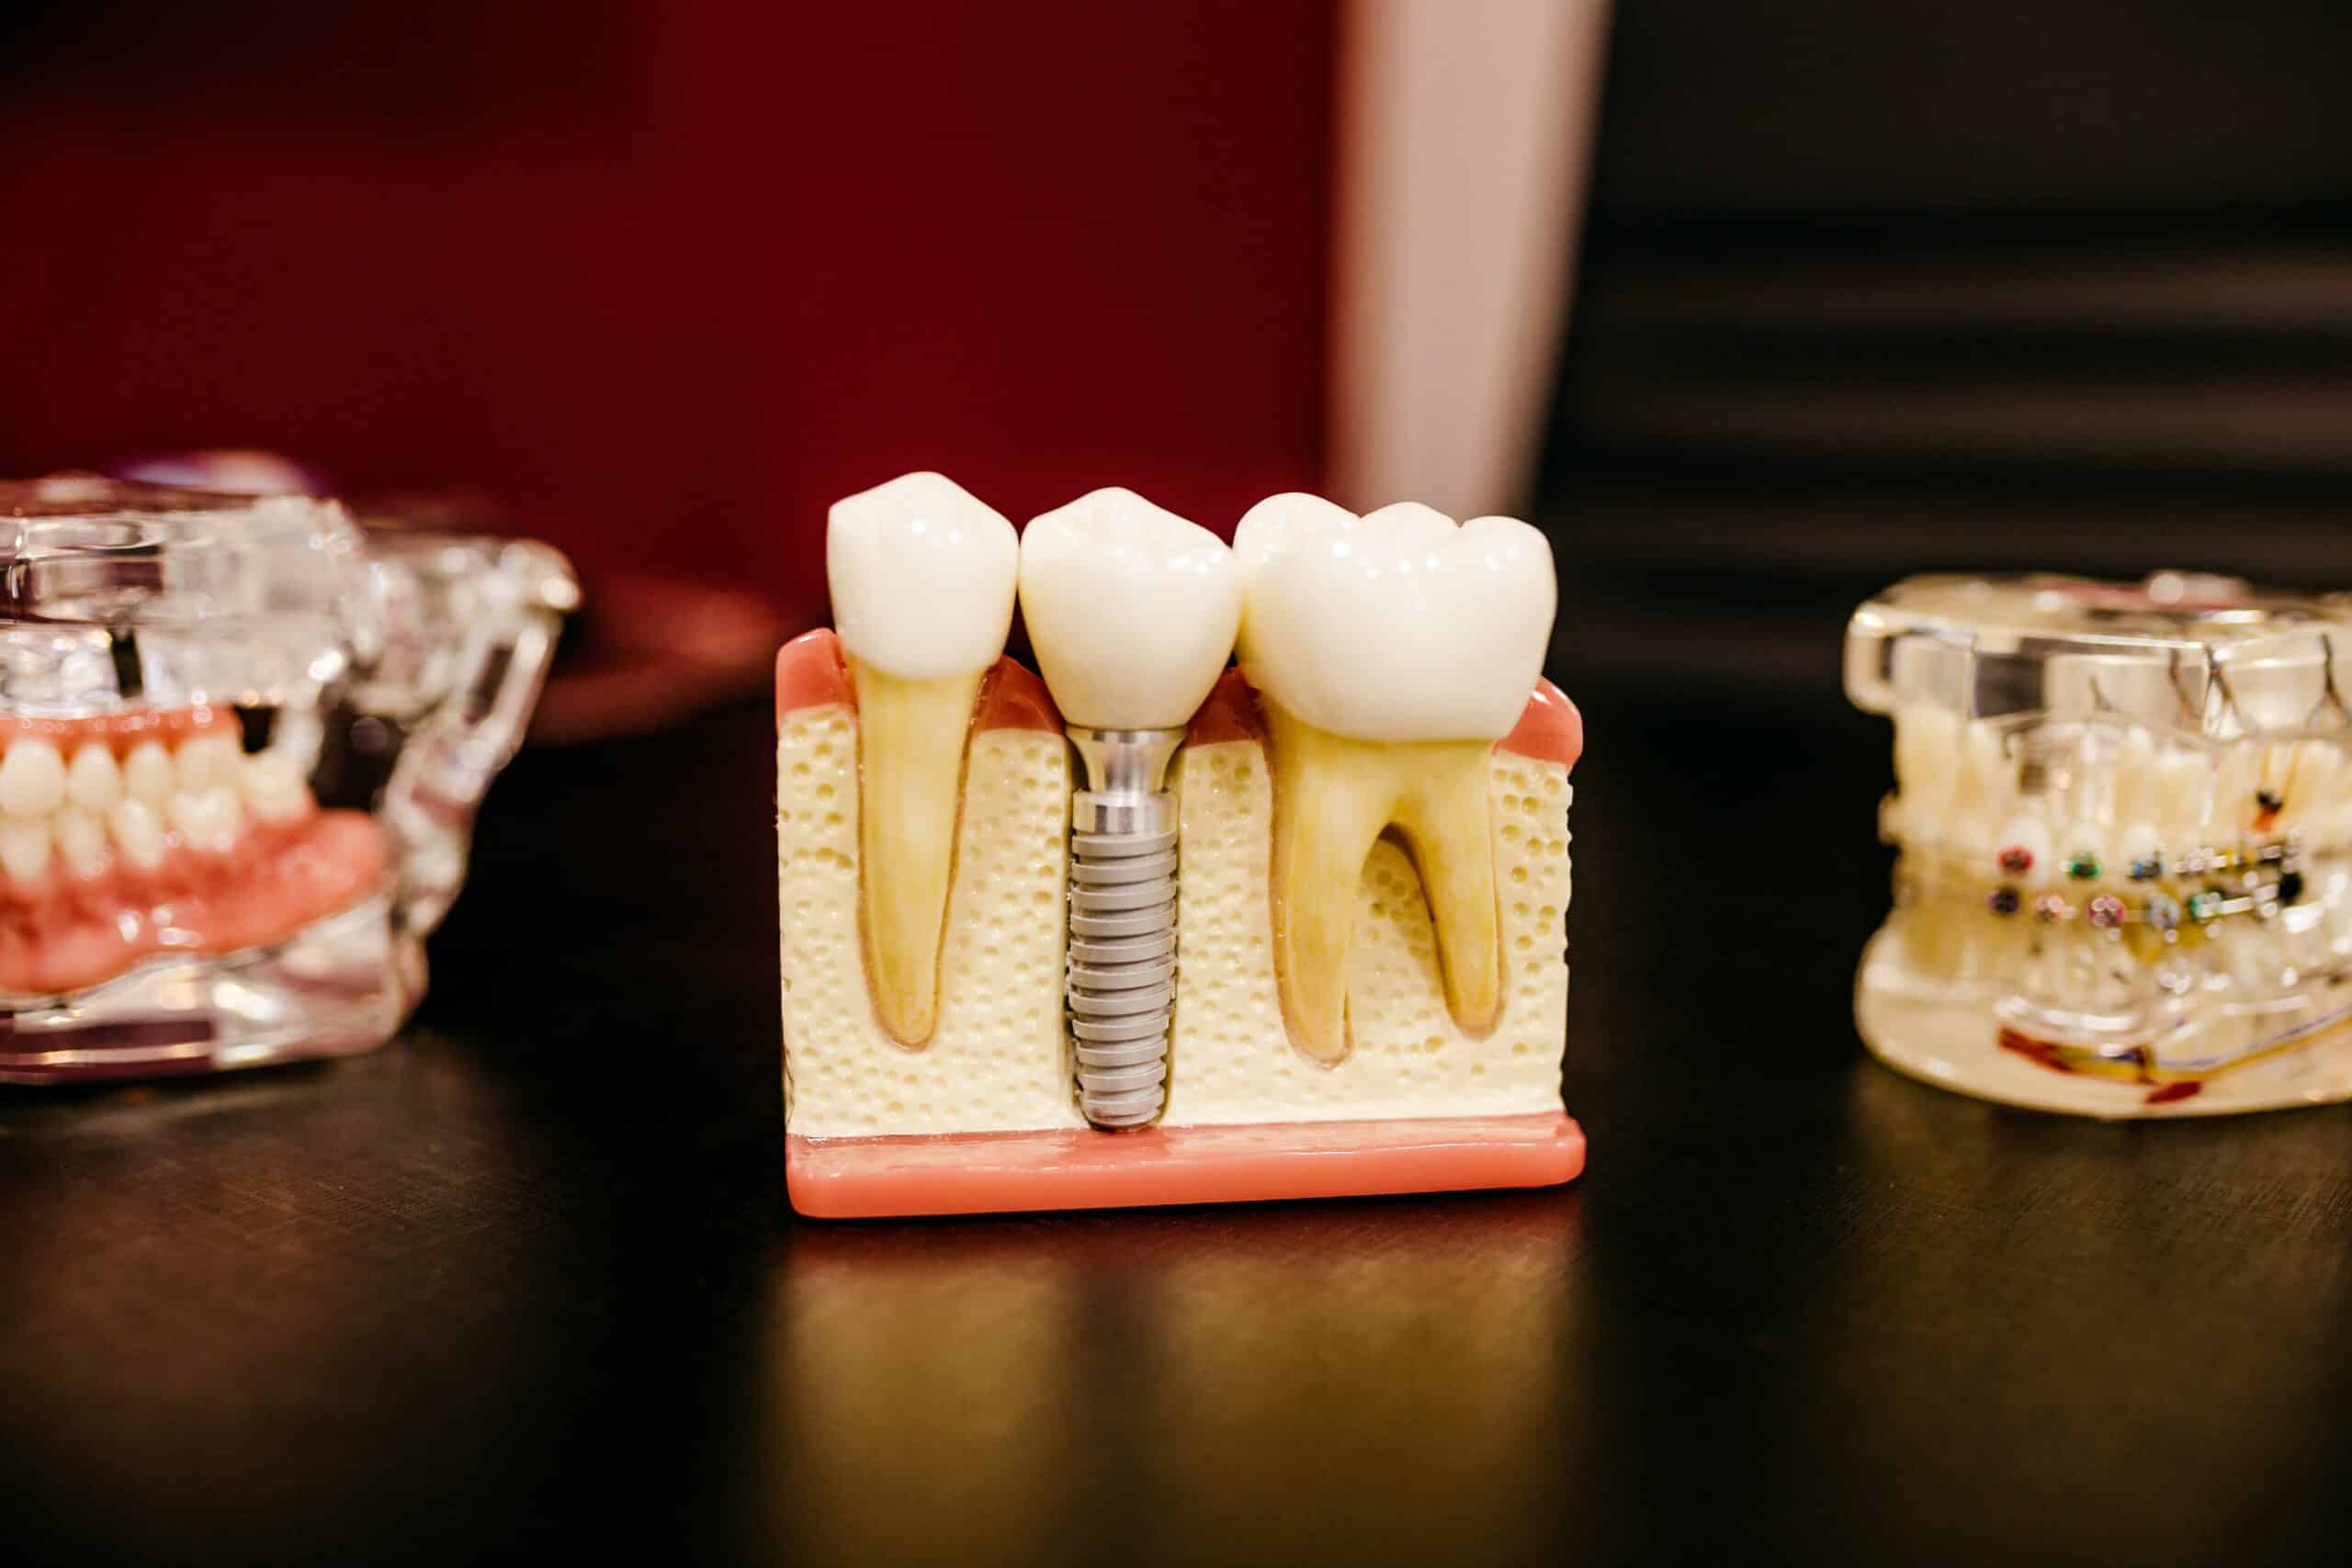 הליך השתלת שיניים בעיצומו בטורקיה, הידוע במצוינות האסתטית הדנטלית שלו.